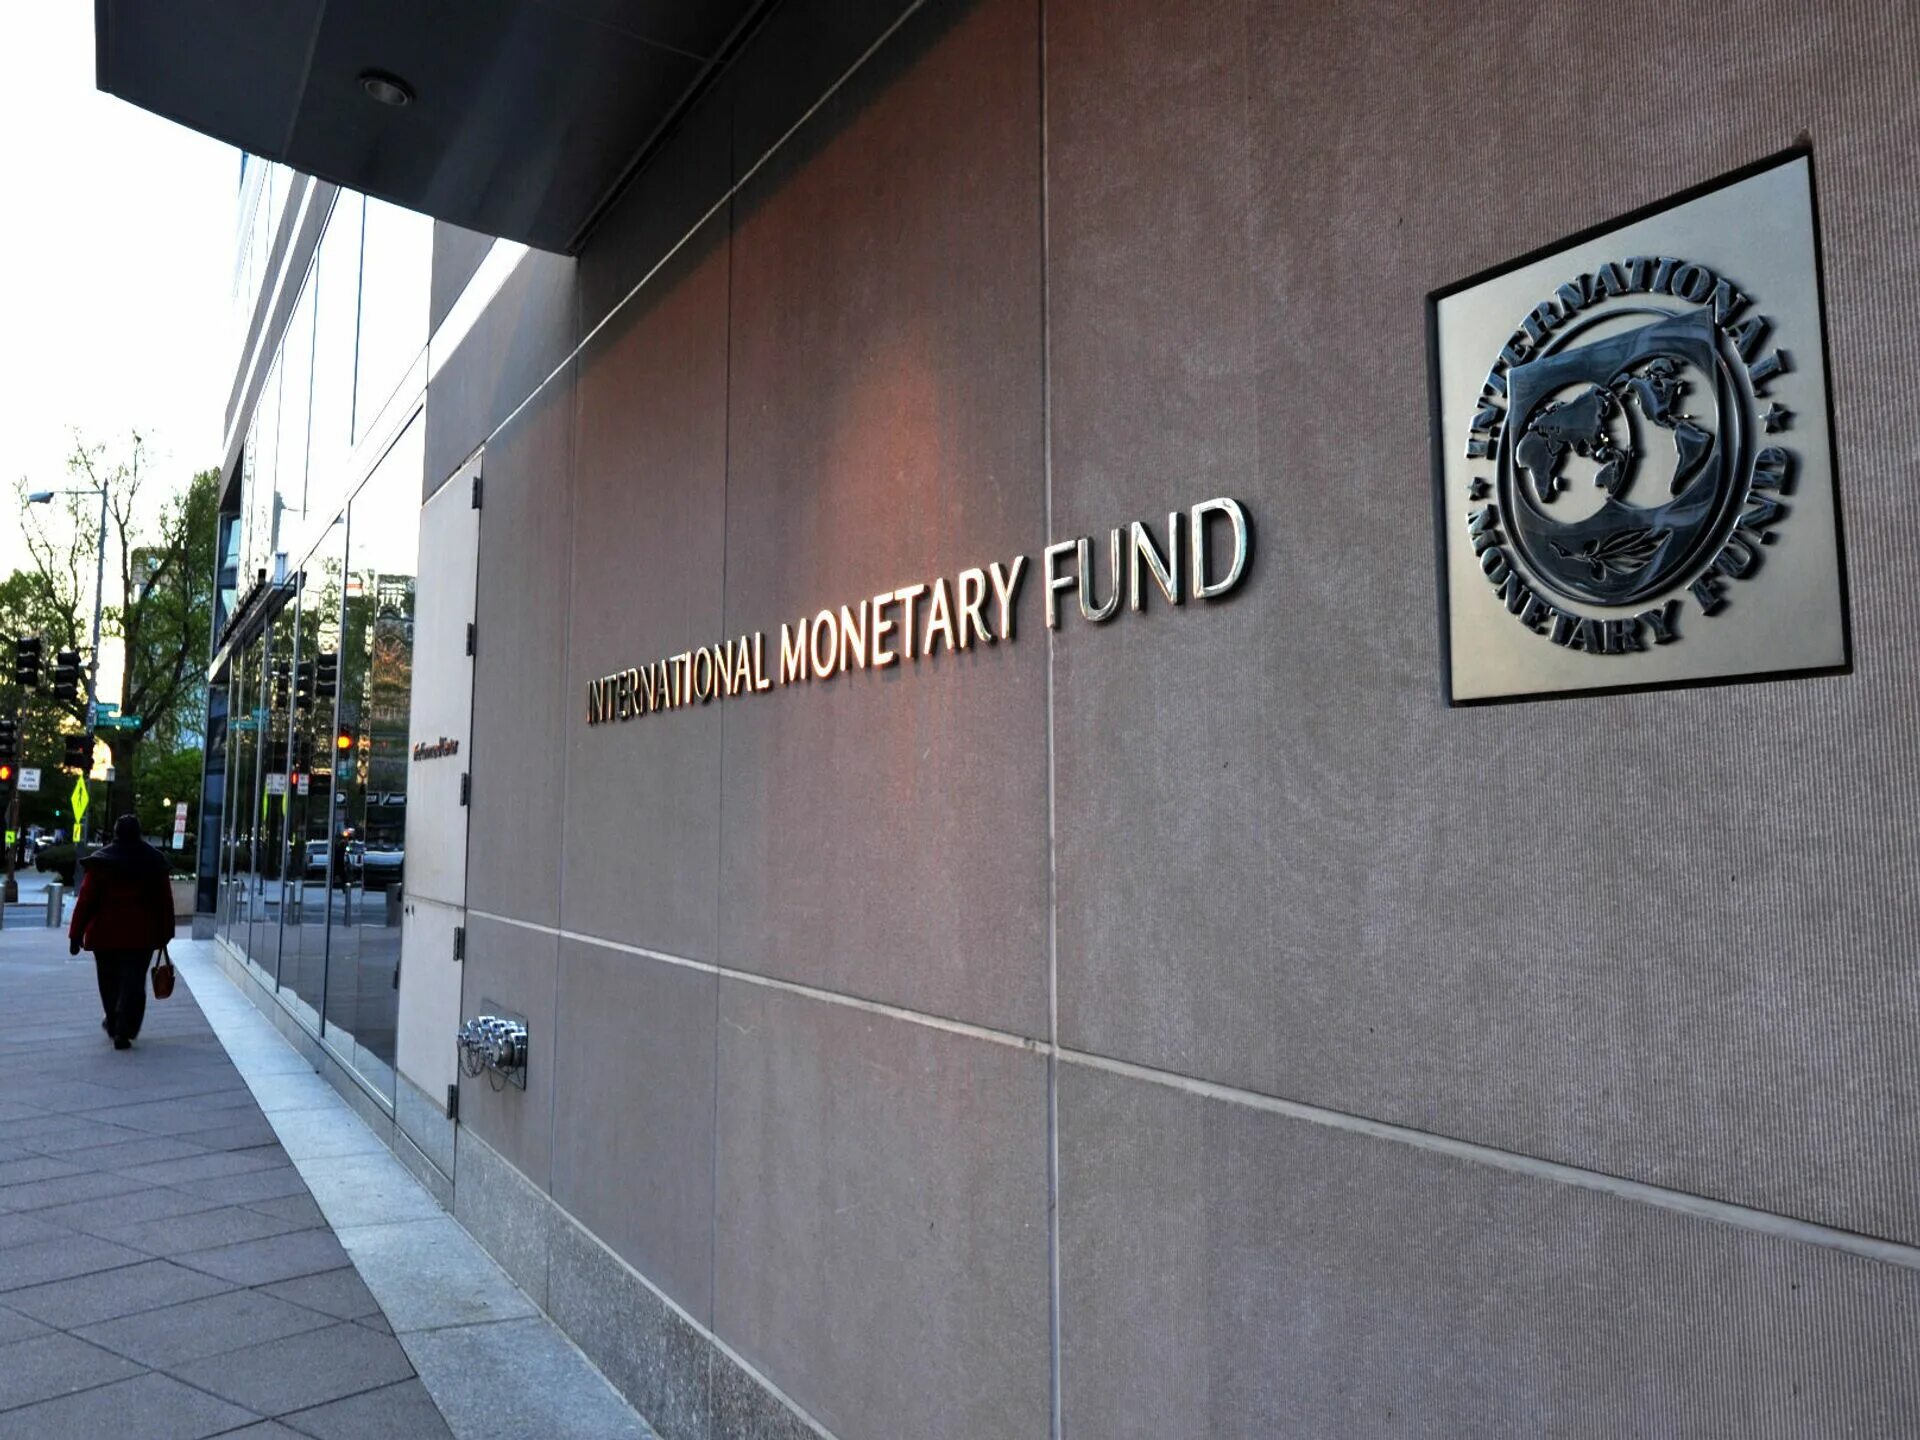 Международный фонд мвф. Здание МВФ США. Международный валютный фонд Вашингтон. Штаб квартира МВФ В Вашингтоне. МВФ (Международный валютный фонд) здание.